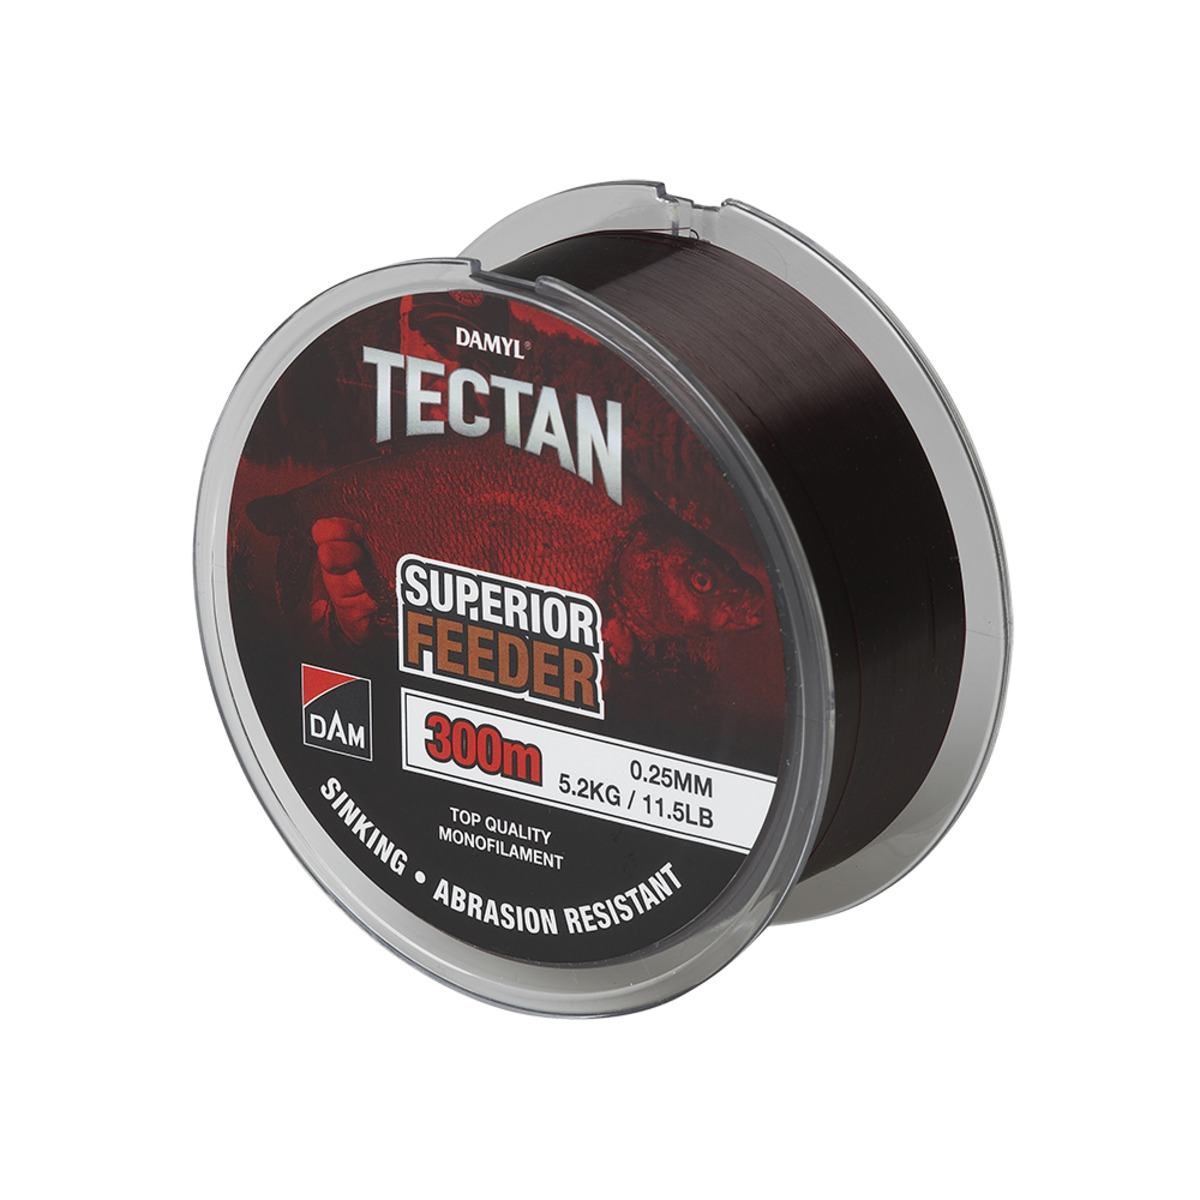 Dam Tectan Superior Feeder 300m - 0.14MM 1.8KG 4LBS BROWN